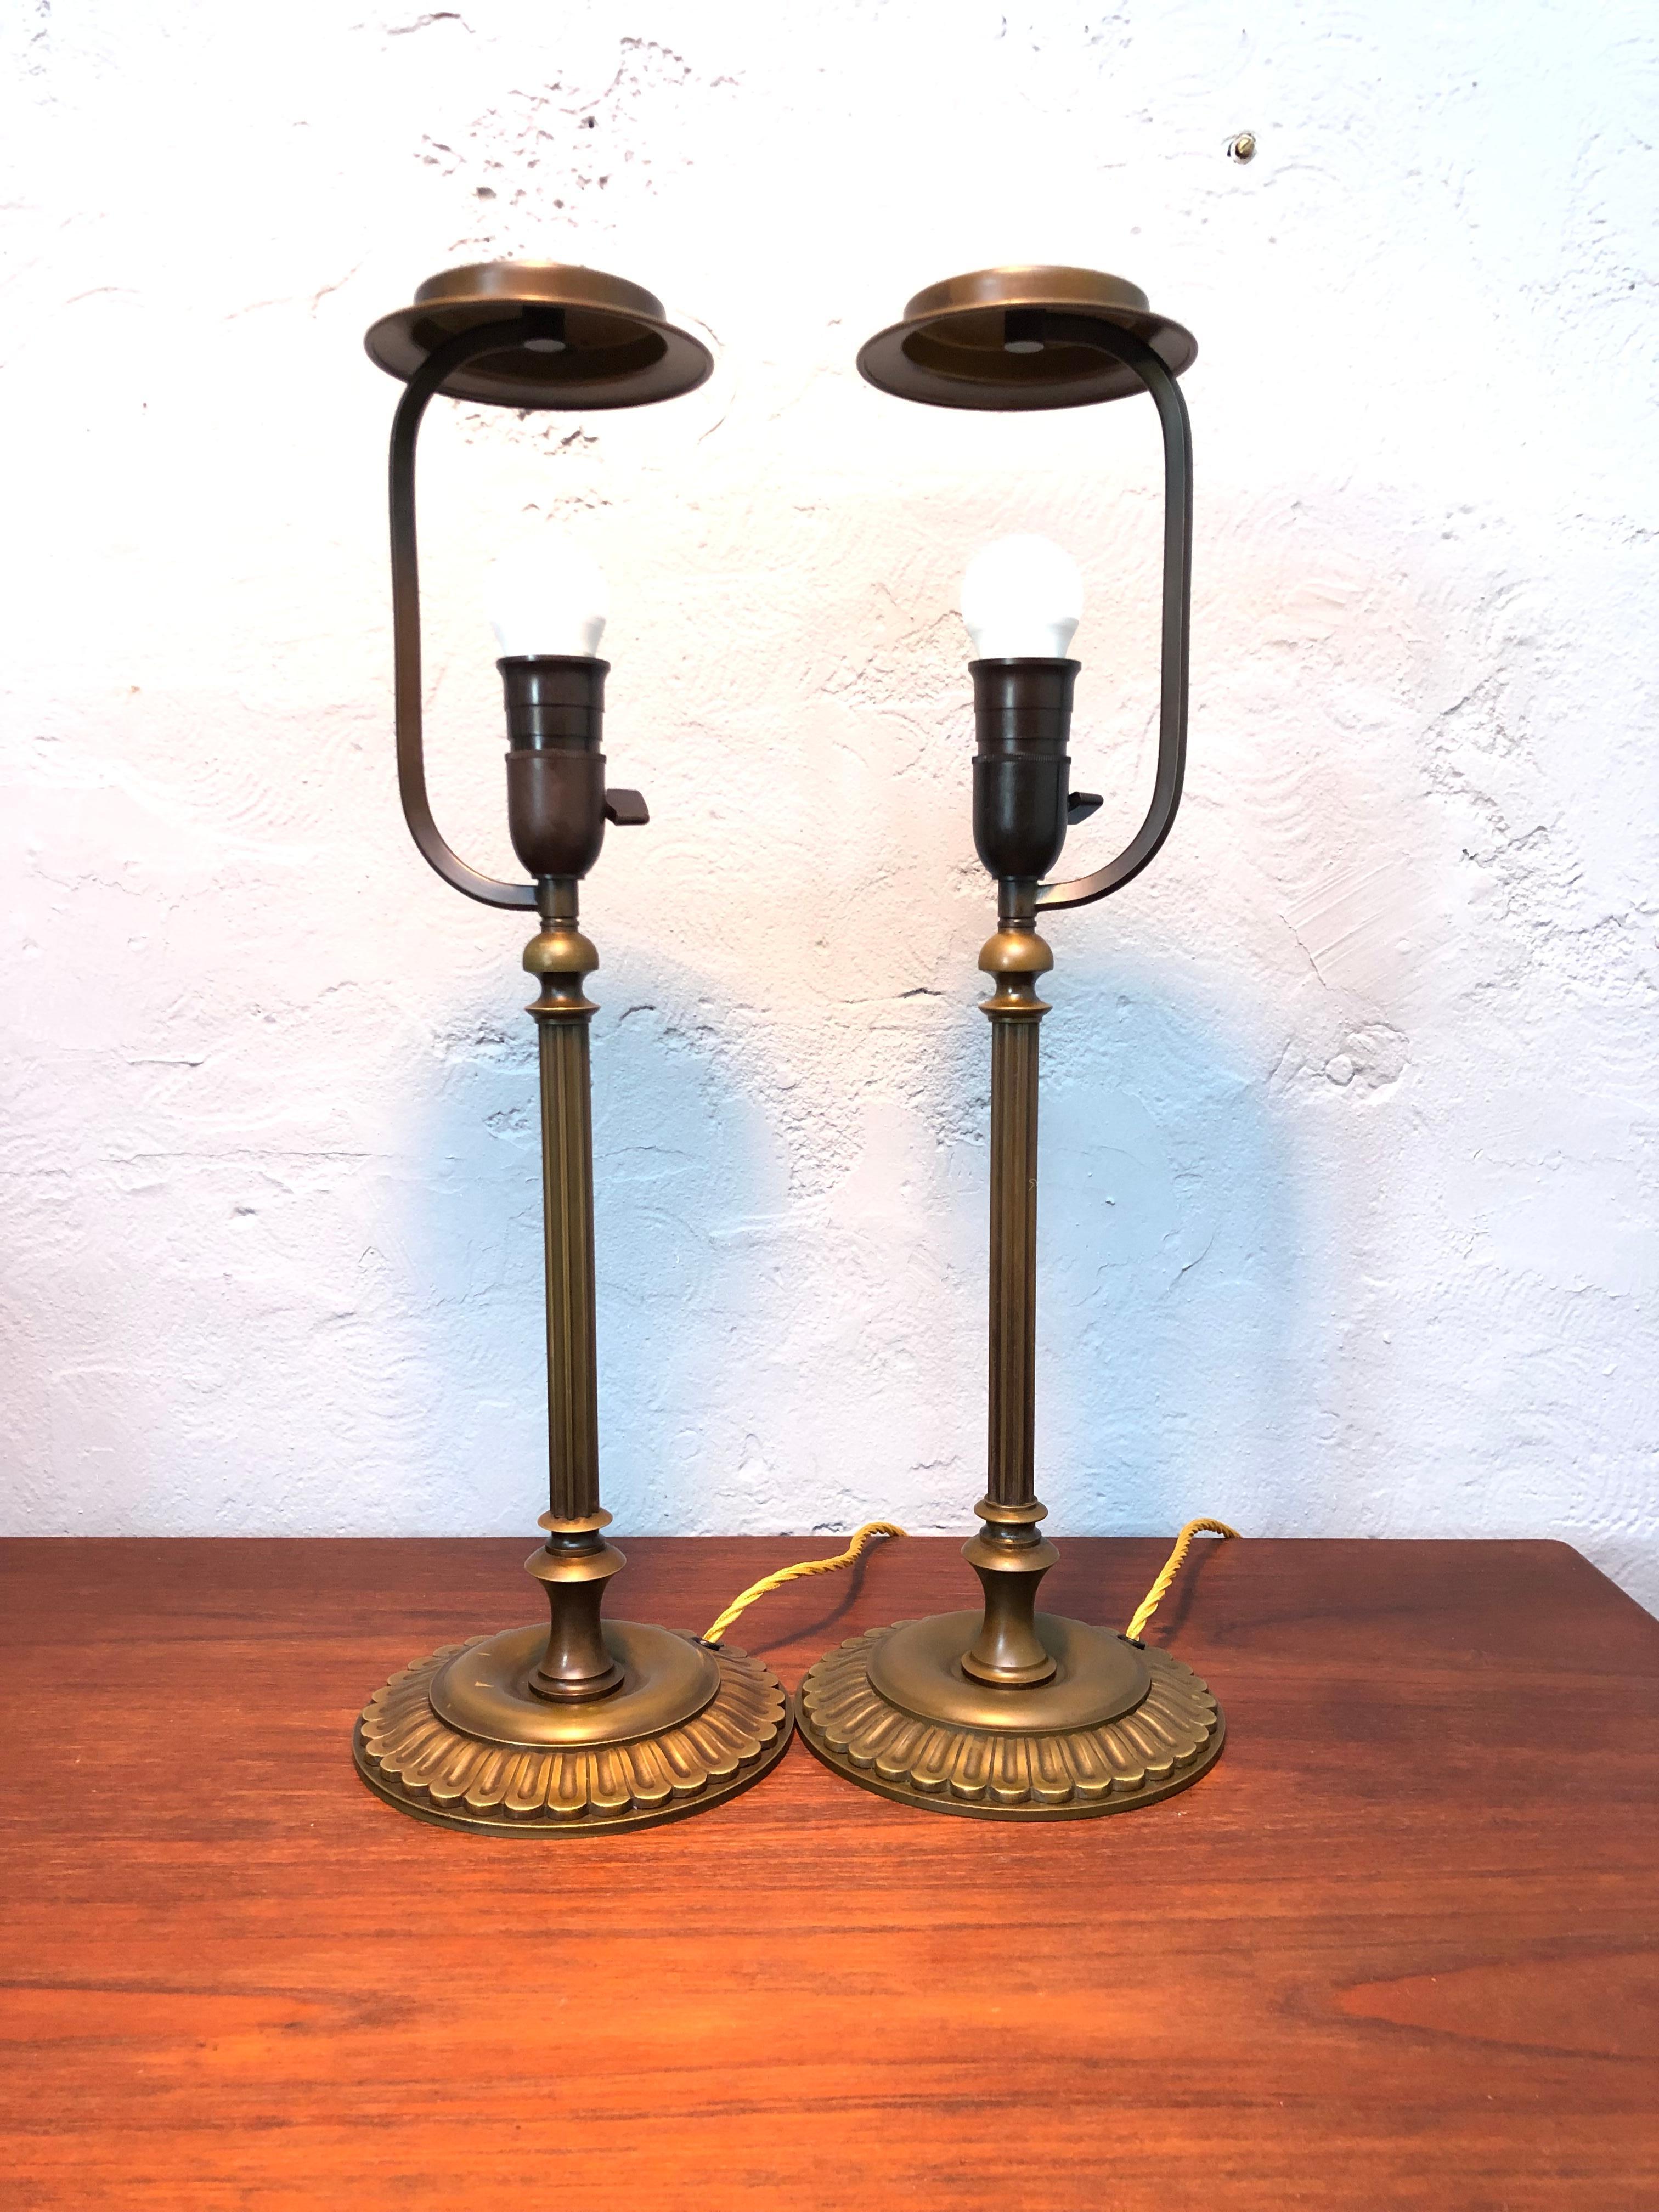 Ein antikes Paar passender dänischer Messing-Tischlampen aus den 1920er Jahren.
Im Originalzustand mit schöner Patina und Farbe auf dem Messing. 
Die originalen Messinghalterungen der Lampenschirme sind noch erhalten. 
Großartige Qualität und